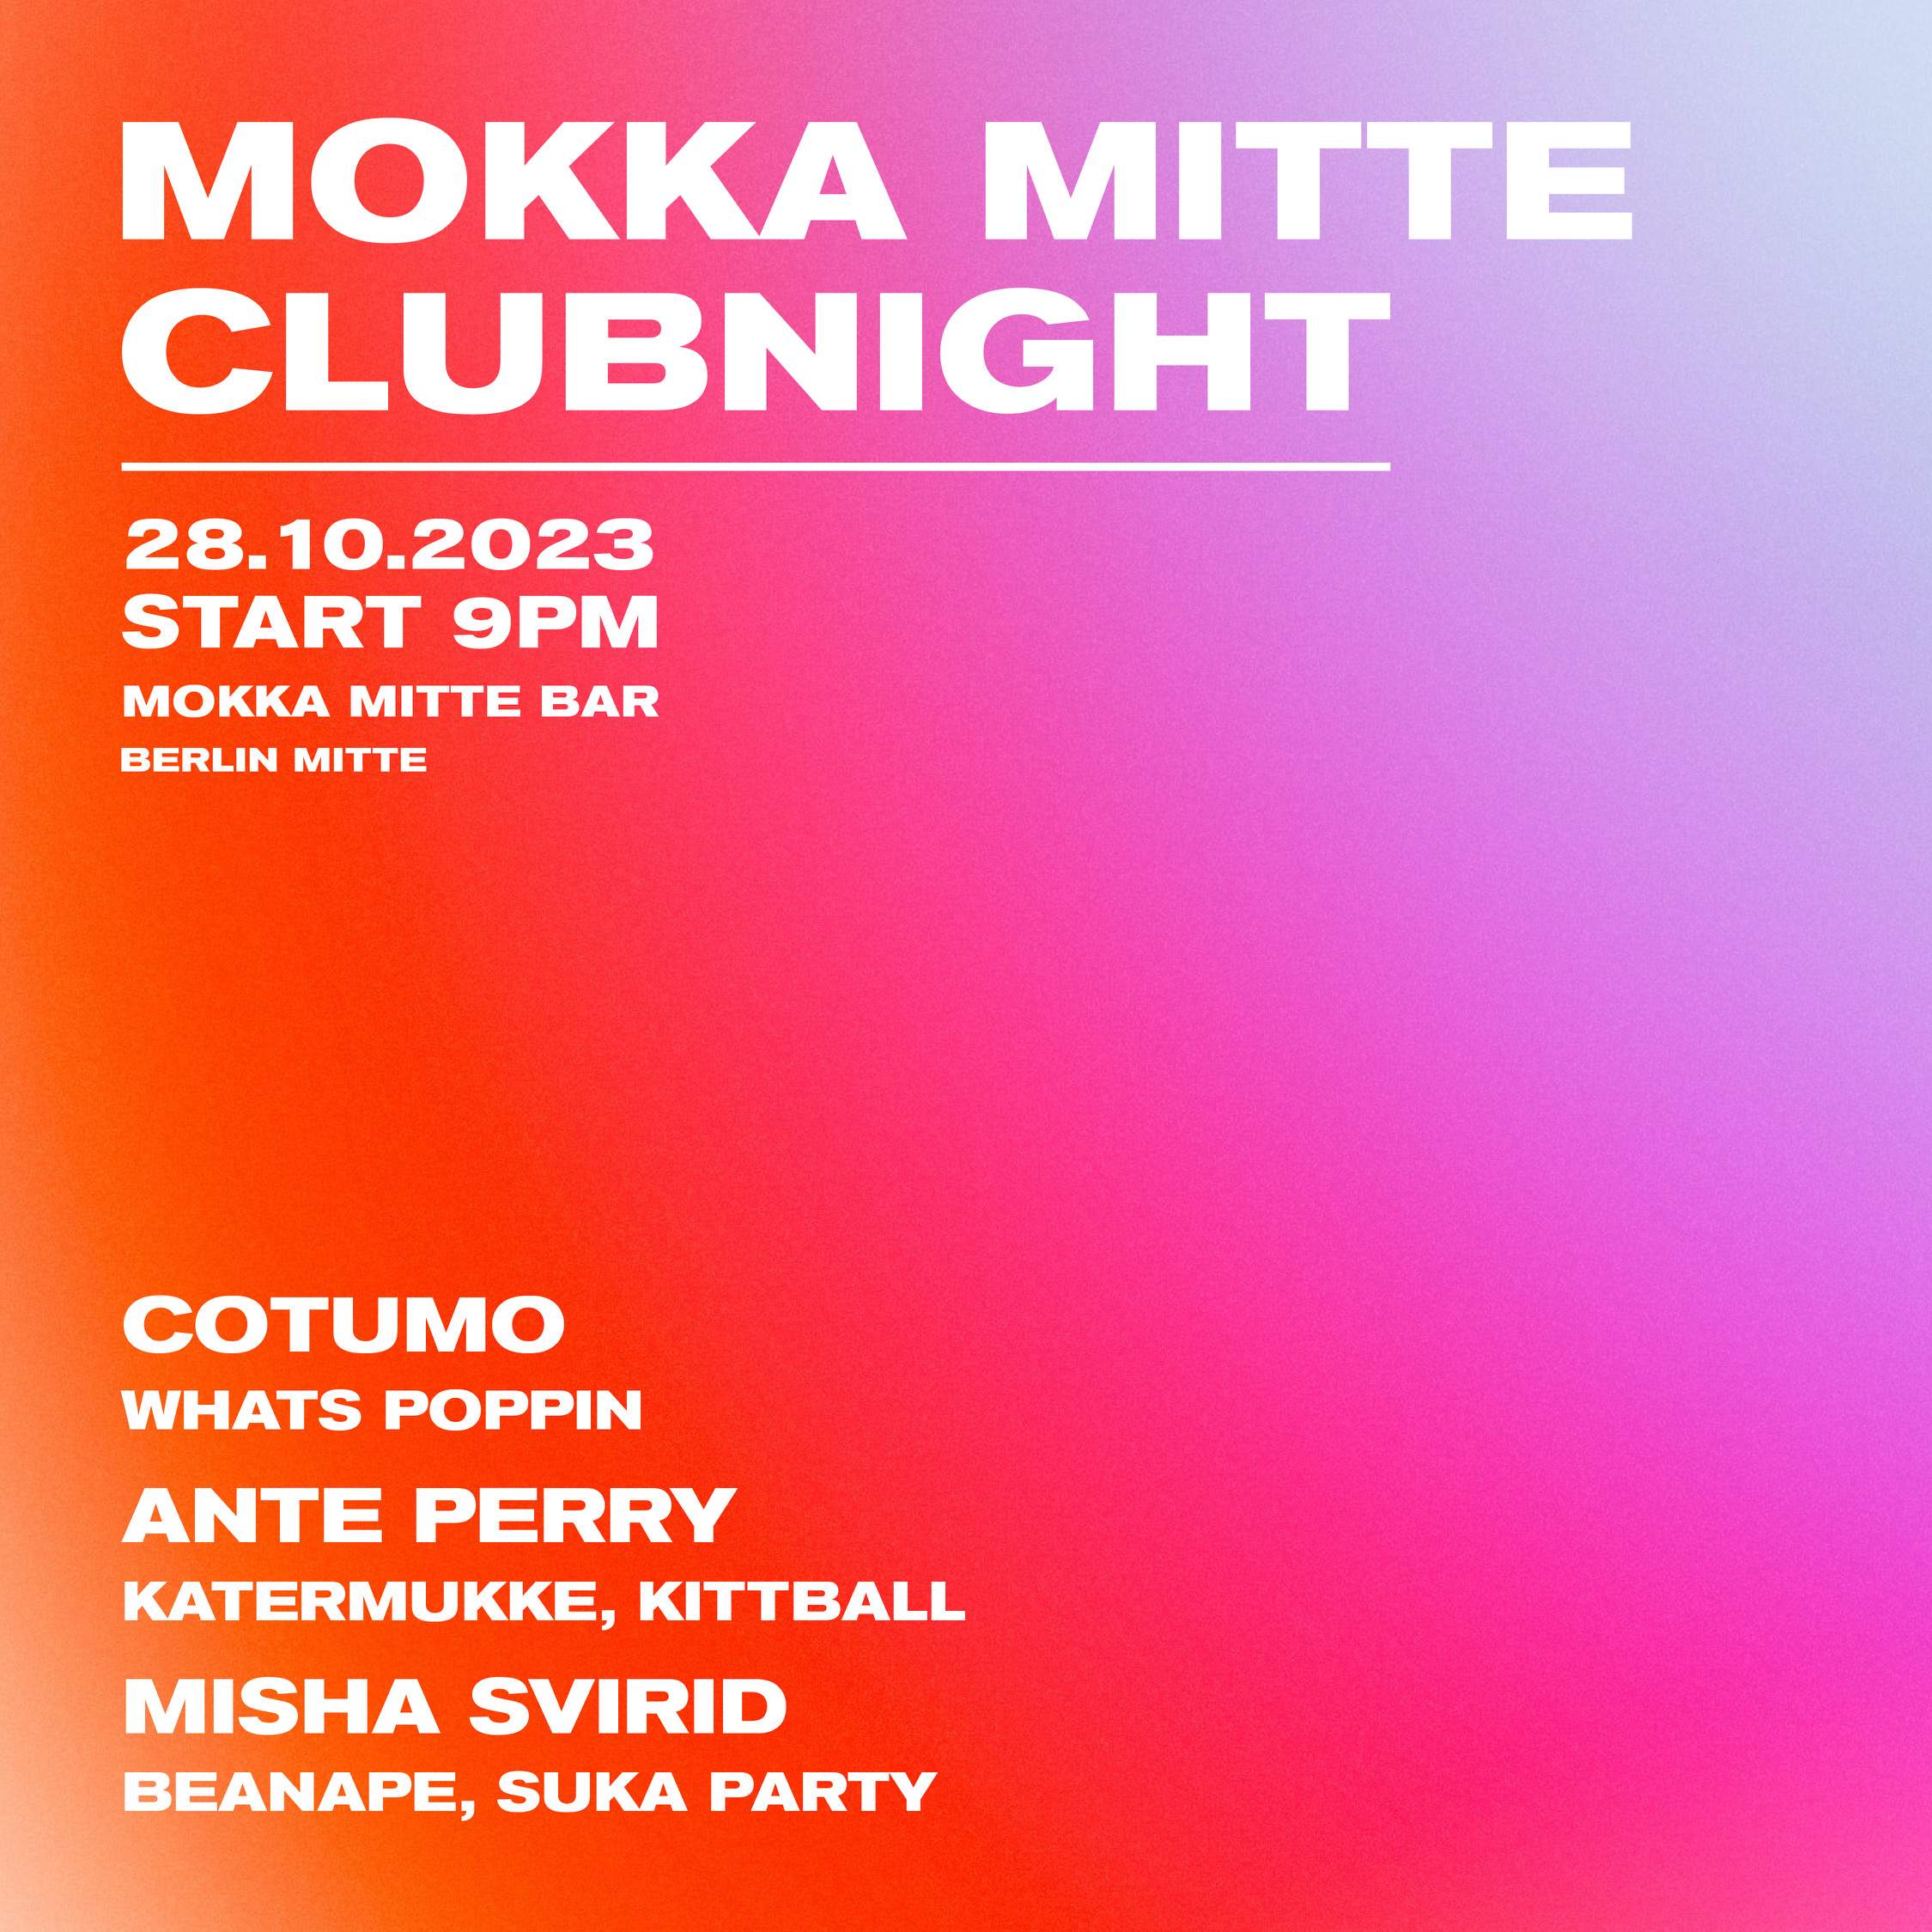 Mokka Mitte Clubnight with Cotumo, Ante Perry & Misha Svirid - フライヤー表